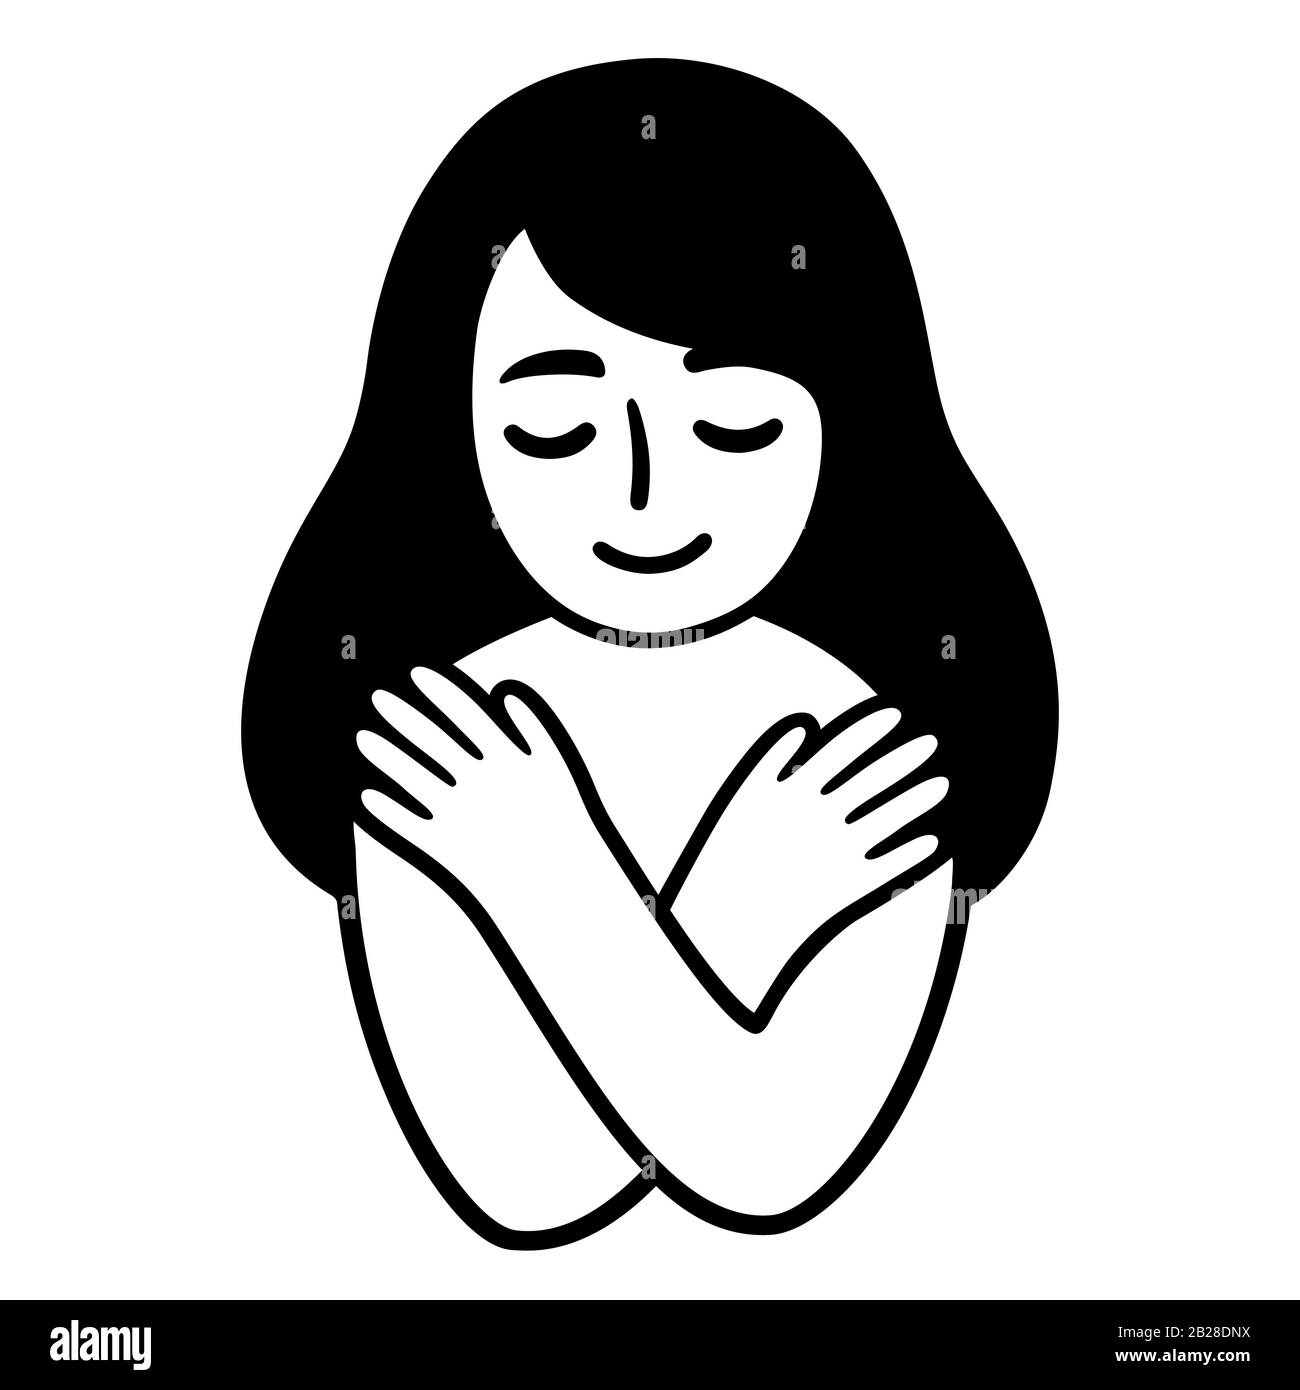 Semplice doodle di cute girl abbracciandosi e sorridendo, le braccia incrociate sul petto. Disegno in bianco e nero di auto-amore, illustrazione vettoriale. Illustrazione Vettoriale